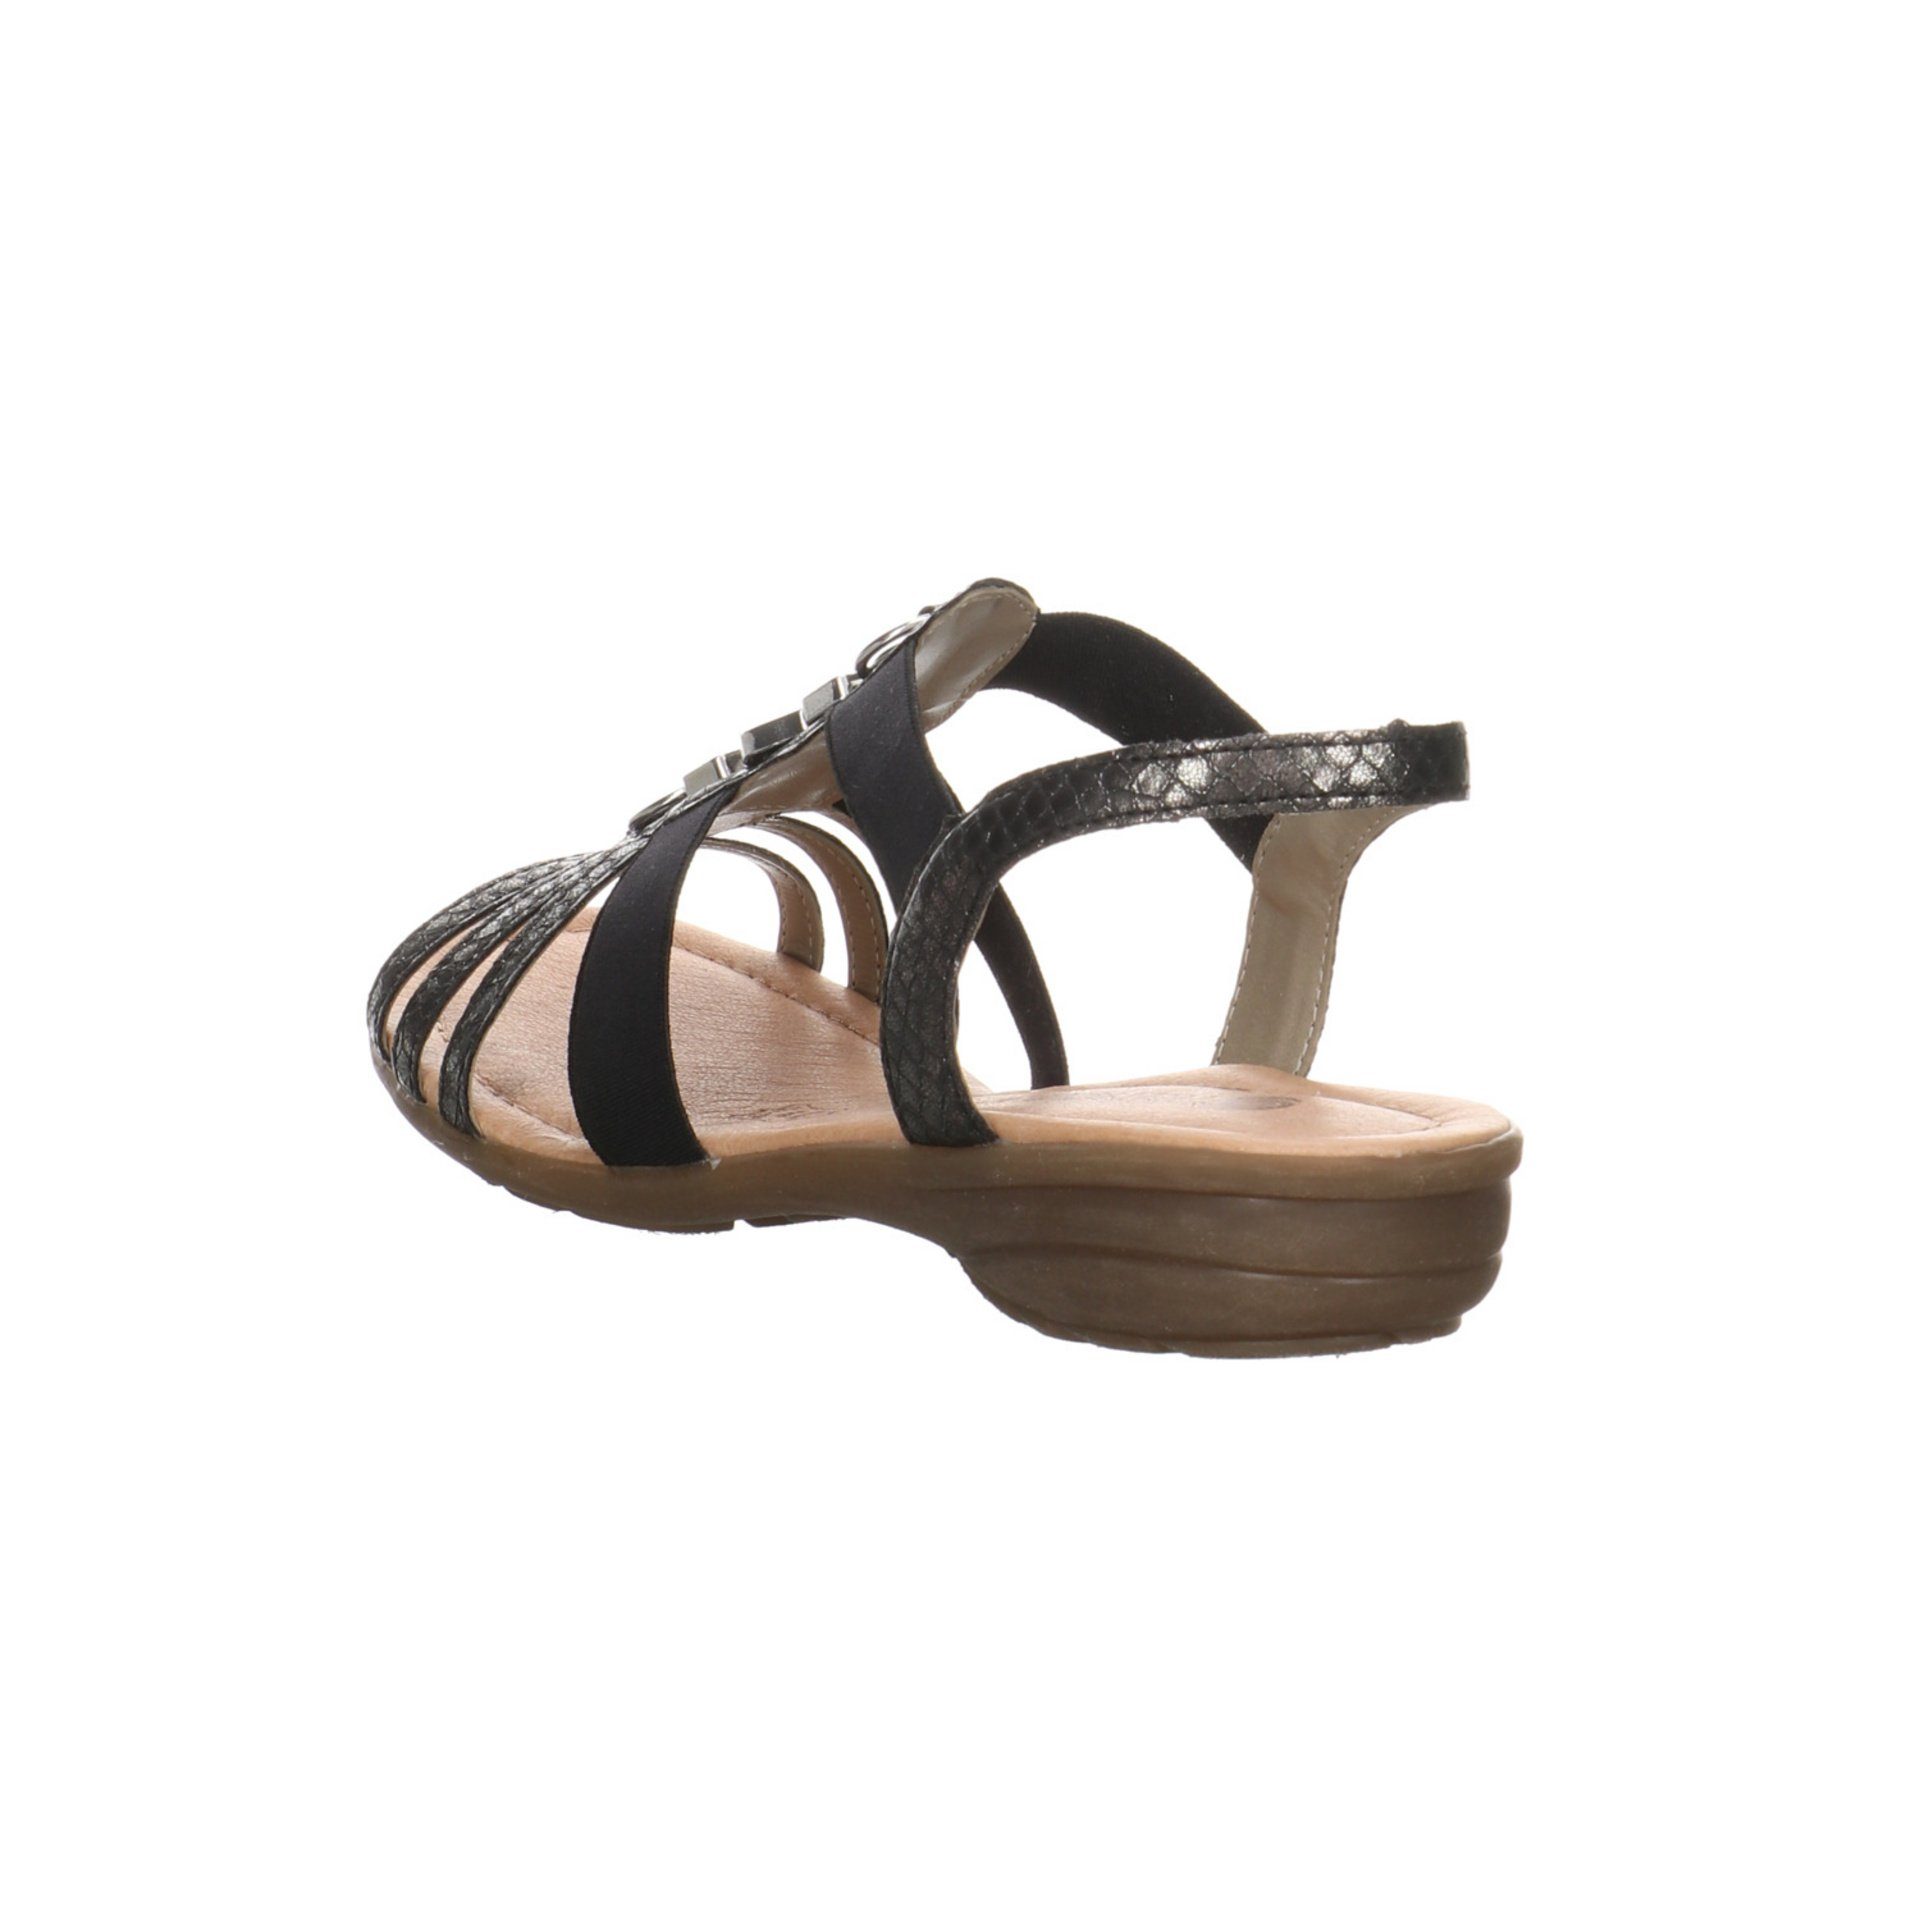 Remonte Damen Sandalen Sandale Synthetikkombination Fußbett Bequem schwarz/schwarz Sandale Freizeit